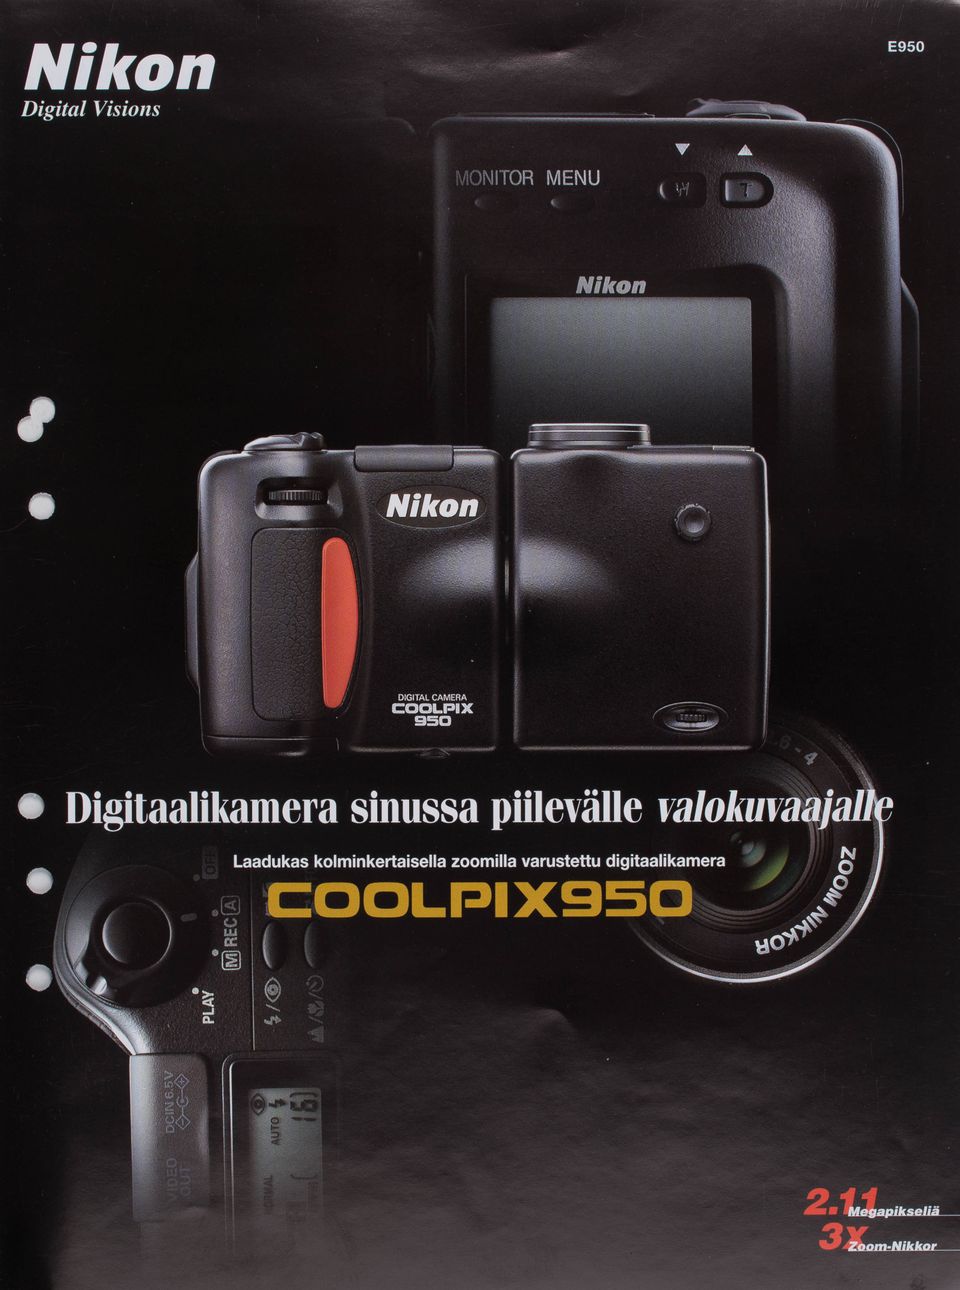 COOLPIX 950